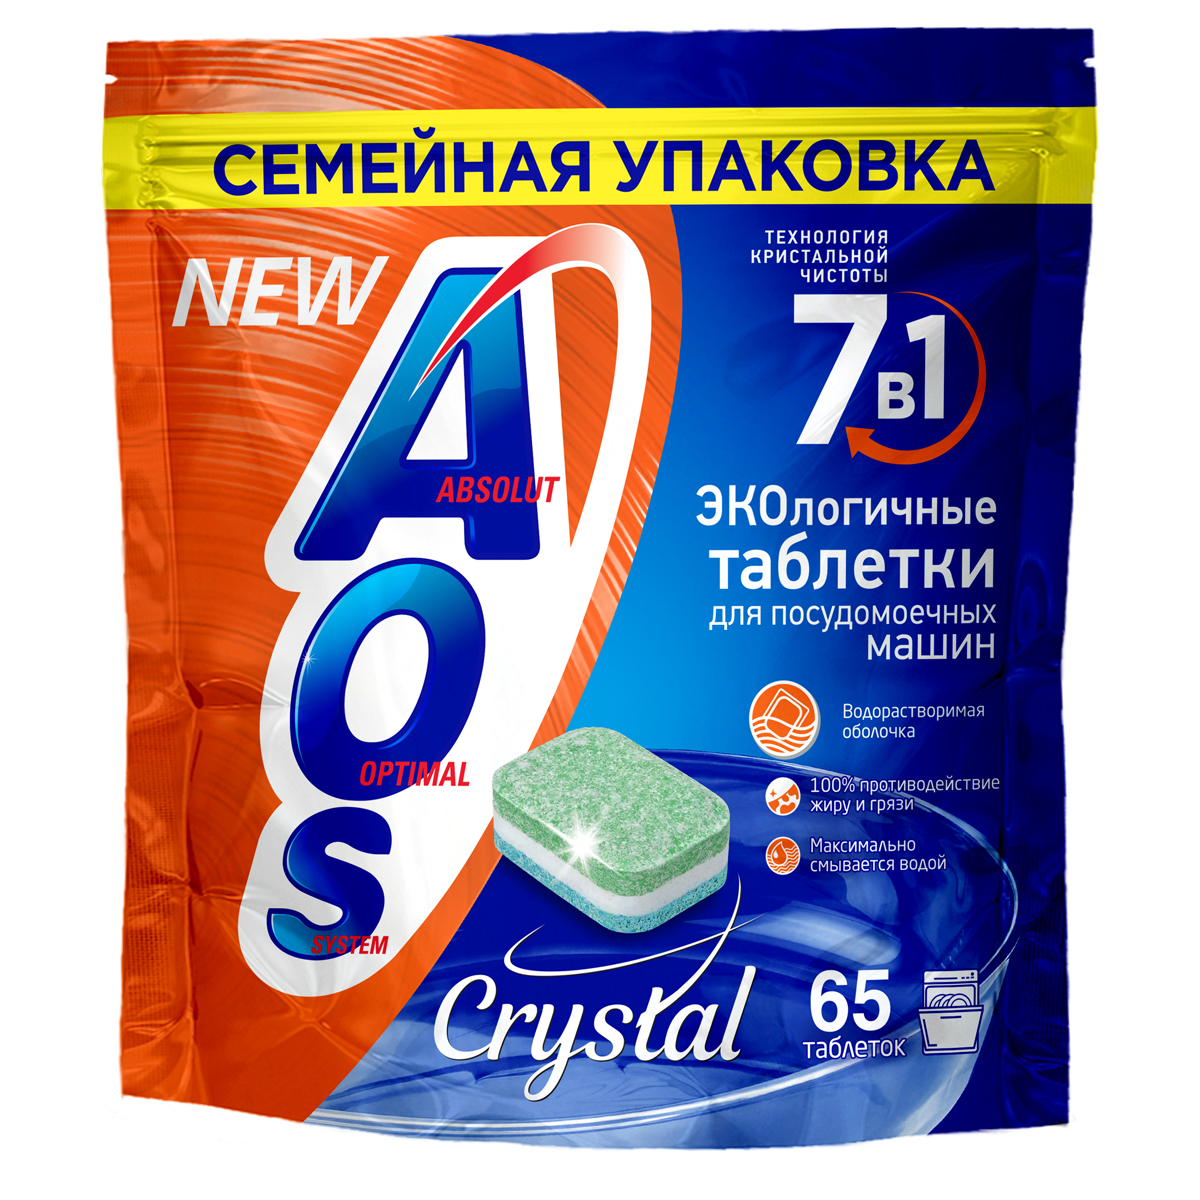 Таблетки для ПММ AOS "Crystal", 65шт